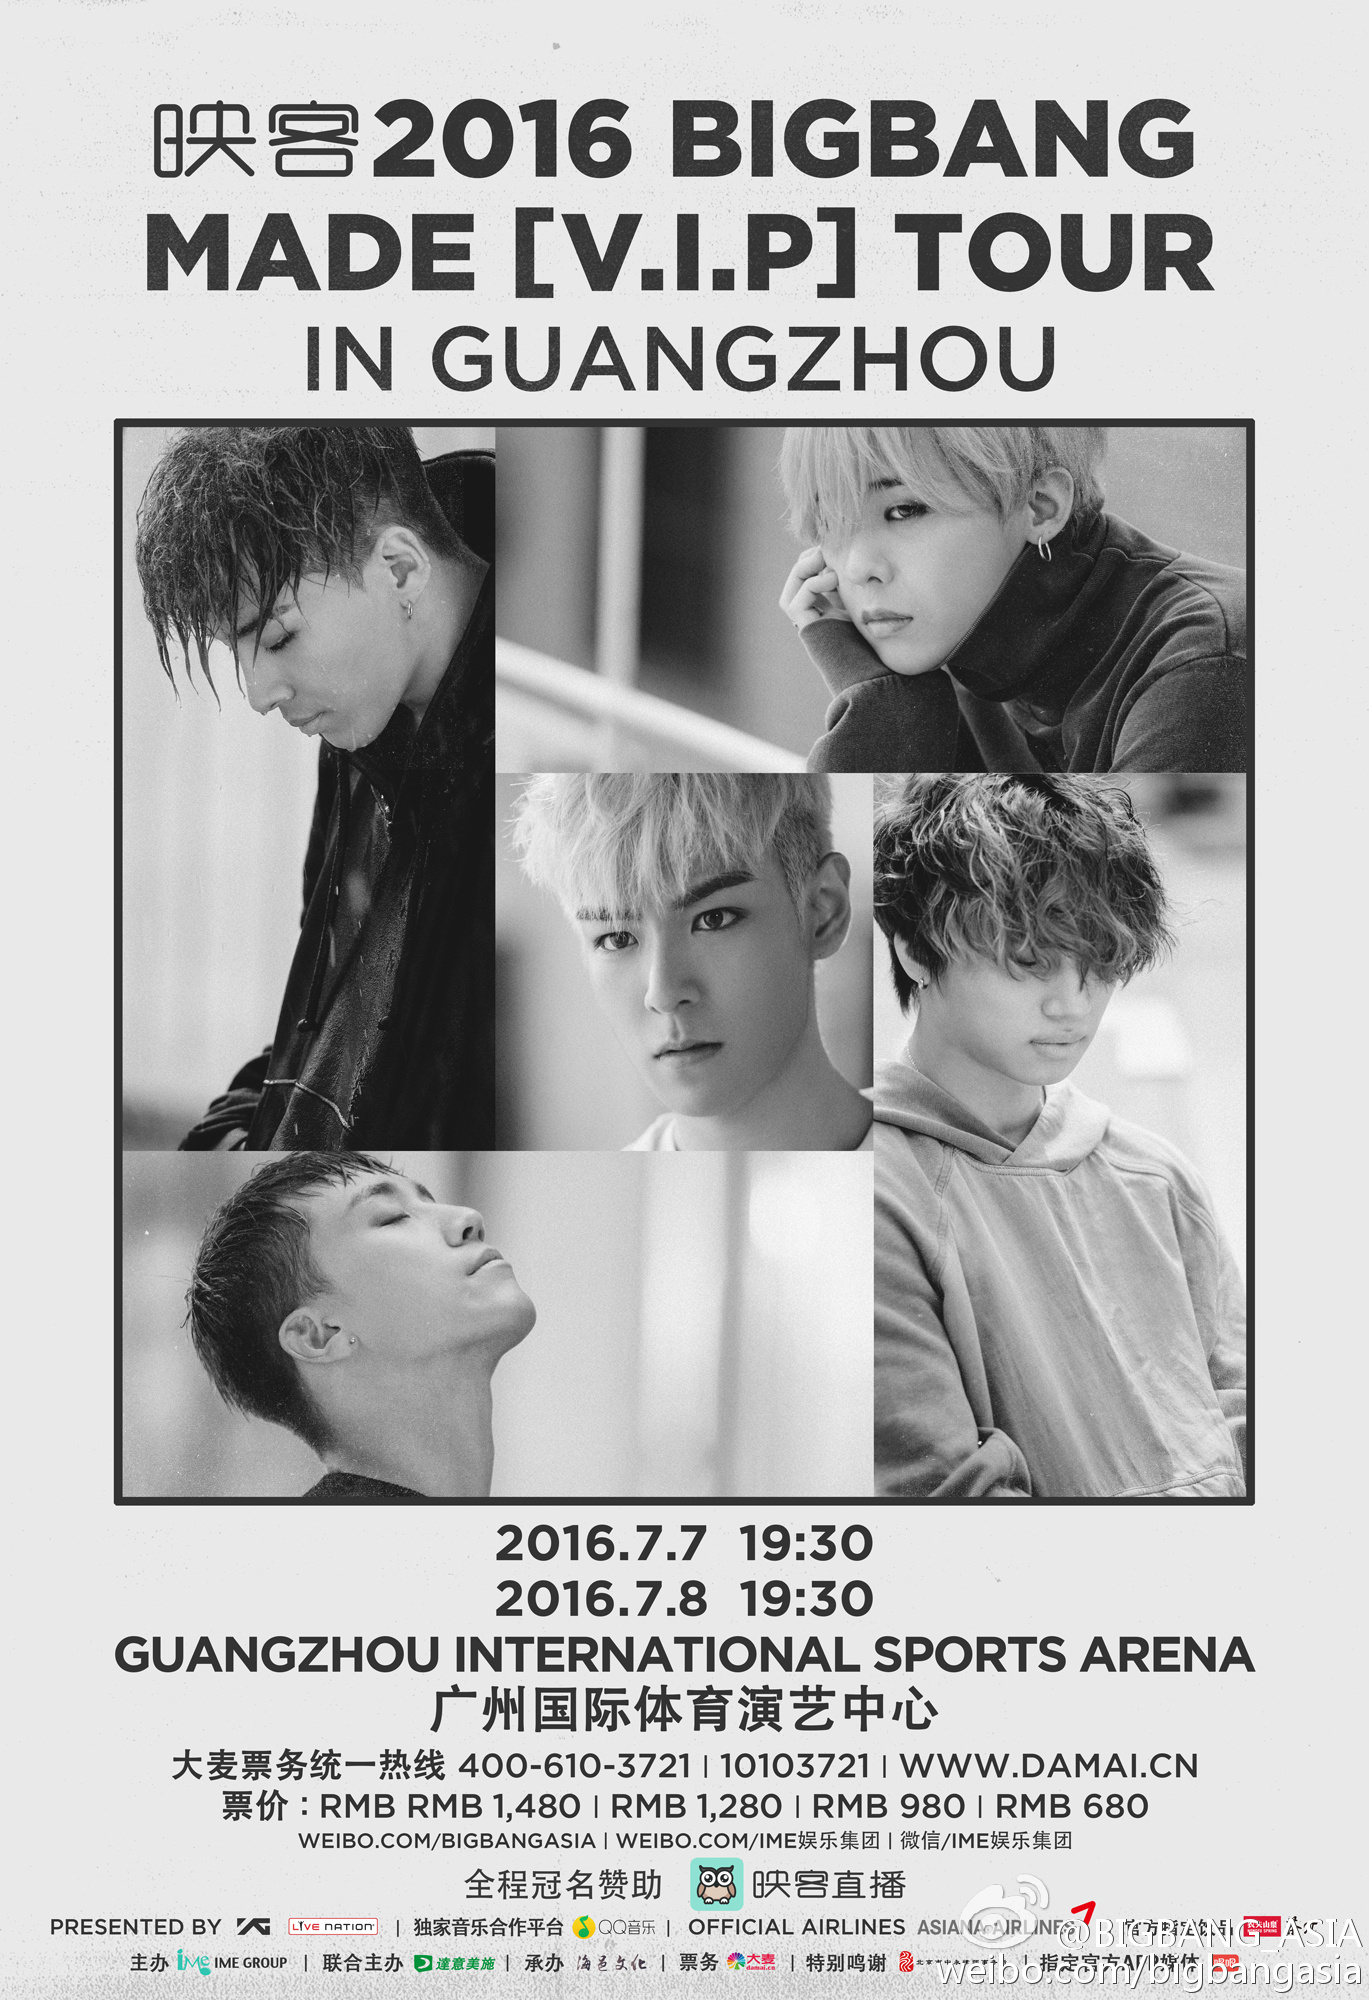 VIP_Tour_Guangzhou_2016.jpg